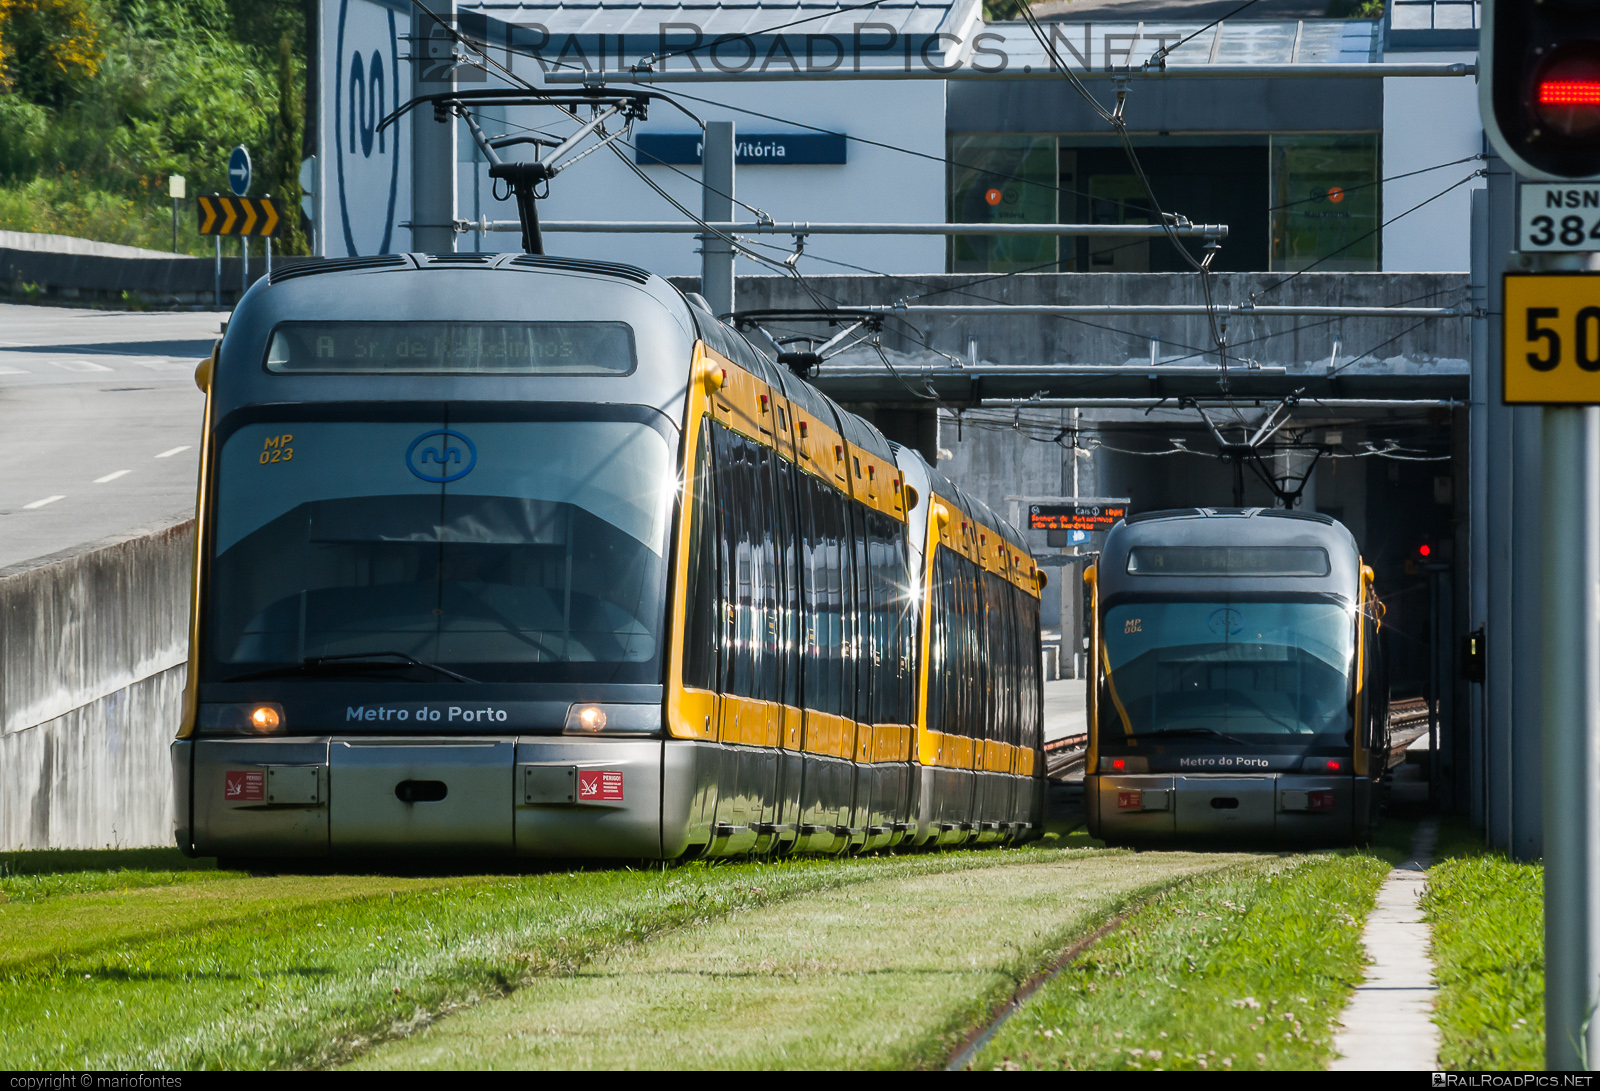 Bombardier Flexity Outlook (Porto Eurotram) - MP023 operated by Metro do Porto #bombardier #bombardierFlexity #eurotram #flexityOutlook #flexityOutlookE #metroDoPorto #tram